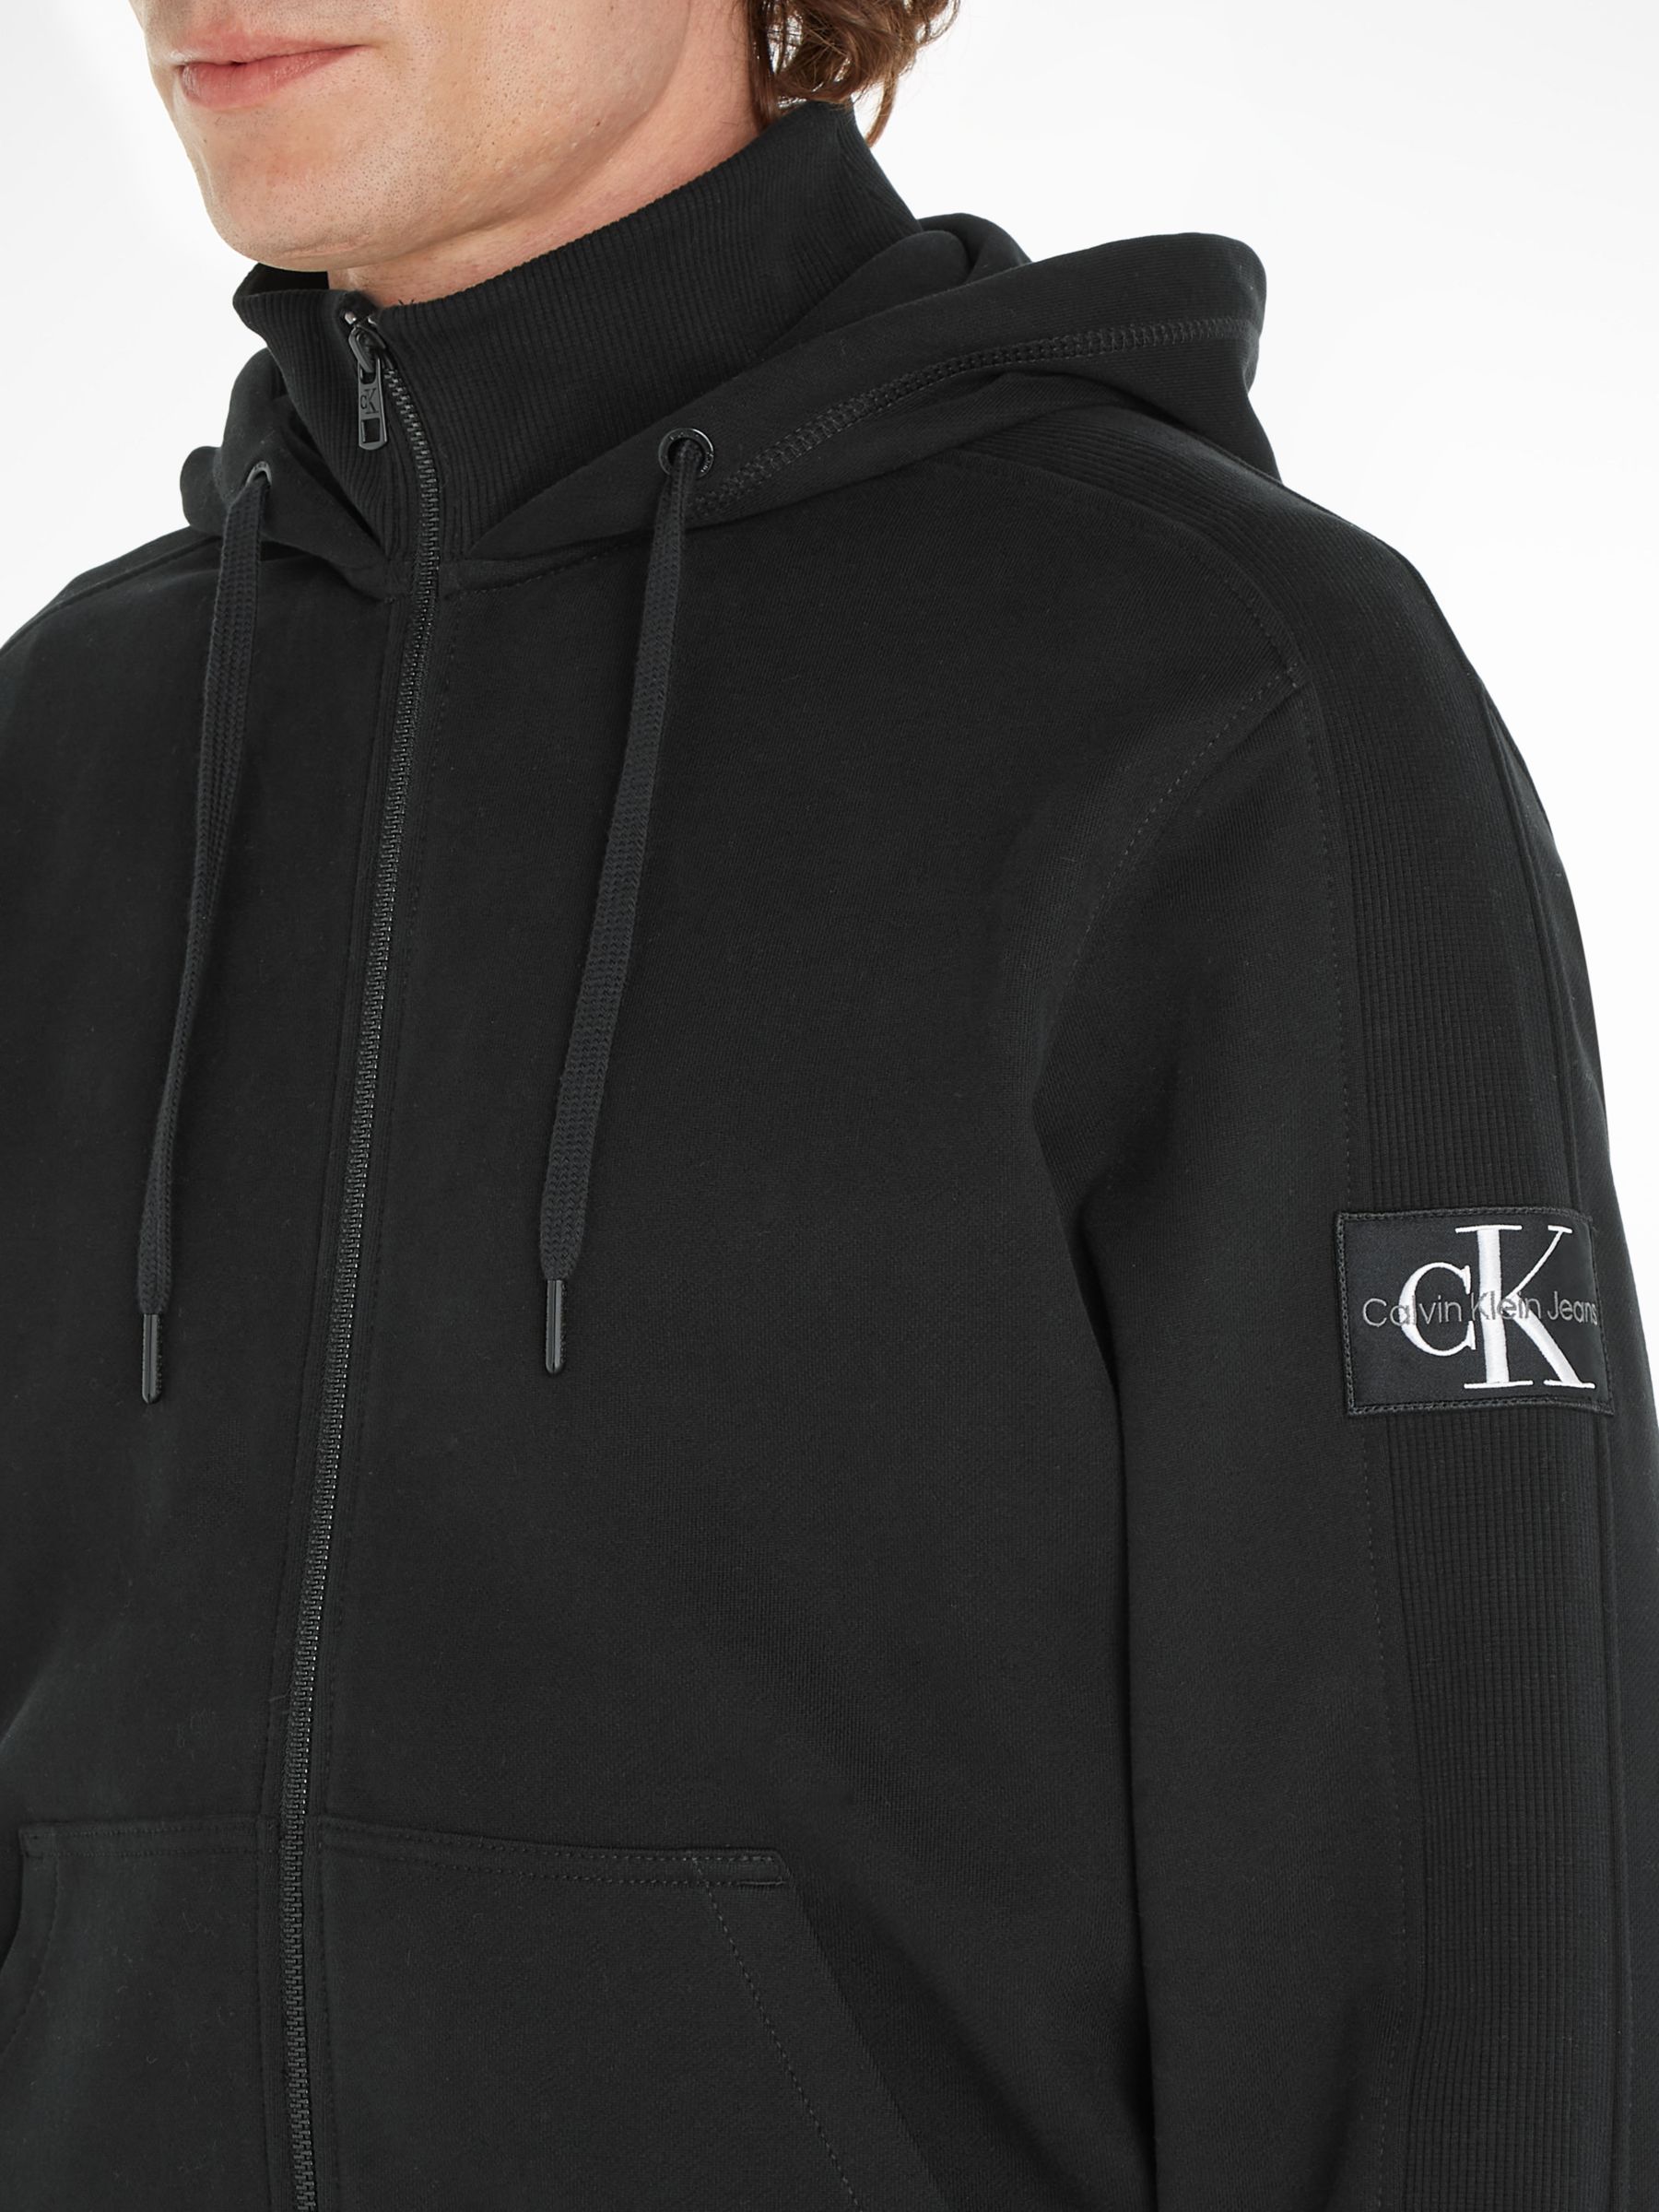 Calvin Klein Jeans Hawk Badge Zip Jacket, Black, S